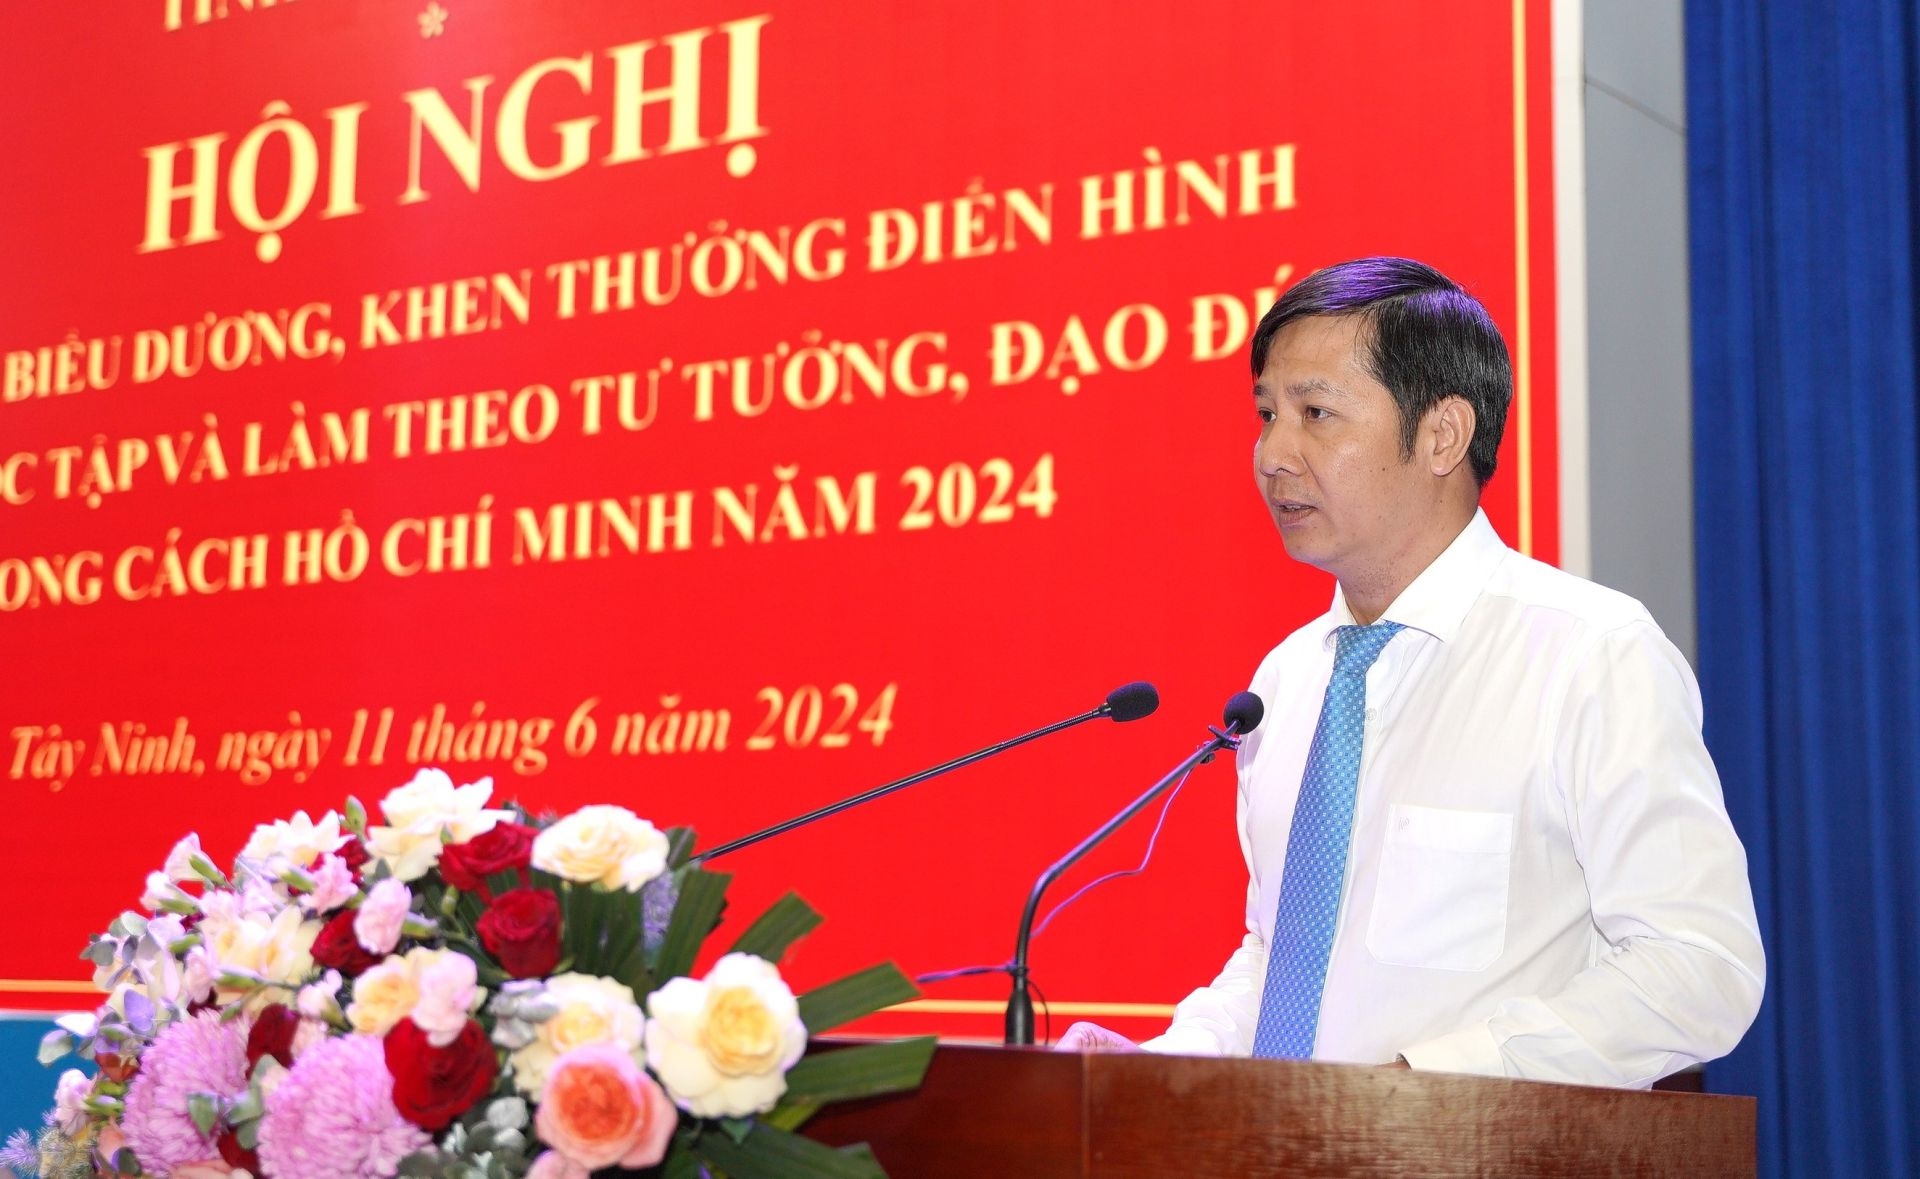 Bí thư Tỉnh uỷ, Chủ tịch HĐND tỉnh Nguyễn Thành Tâm phát biểu kết luận hội nghị.